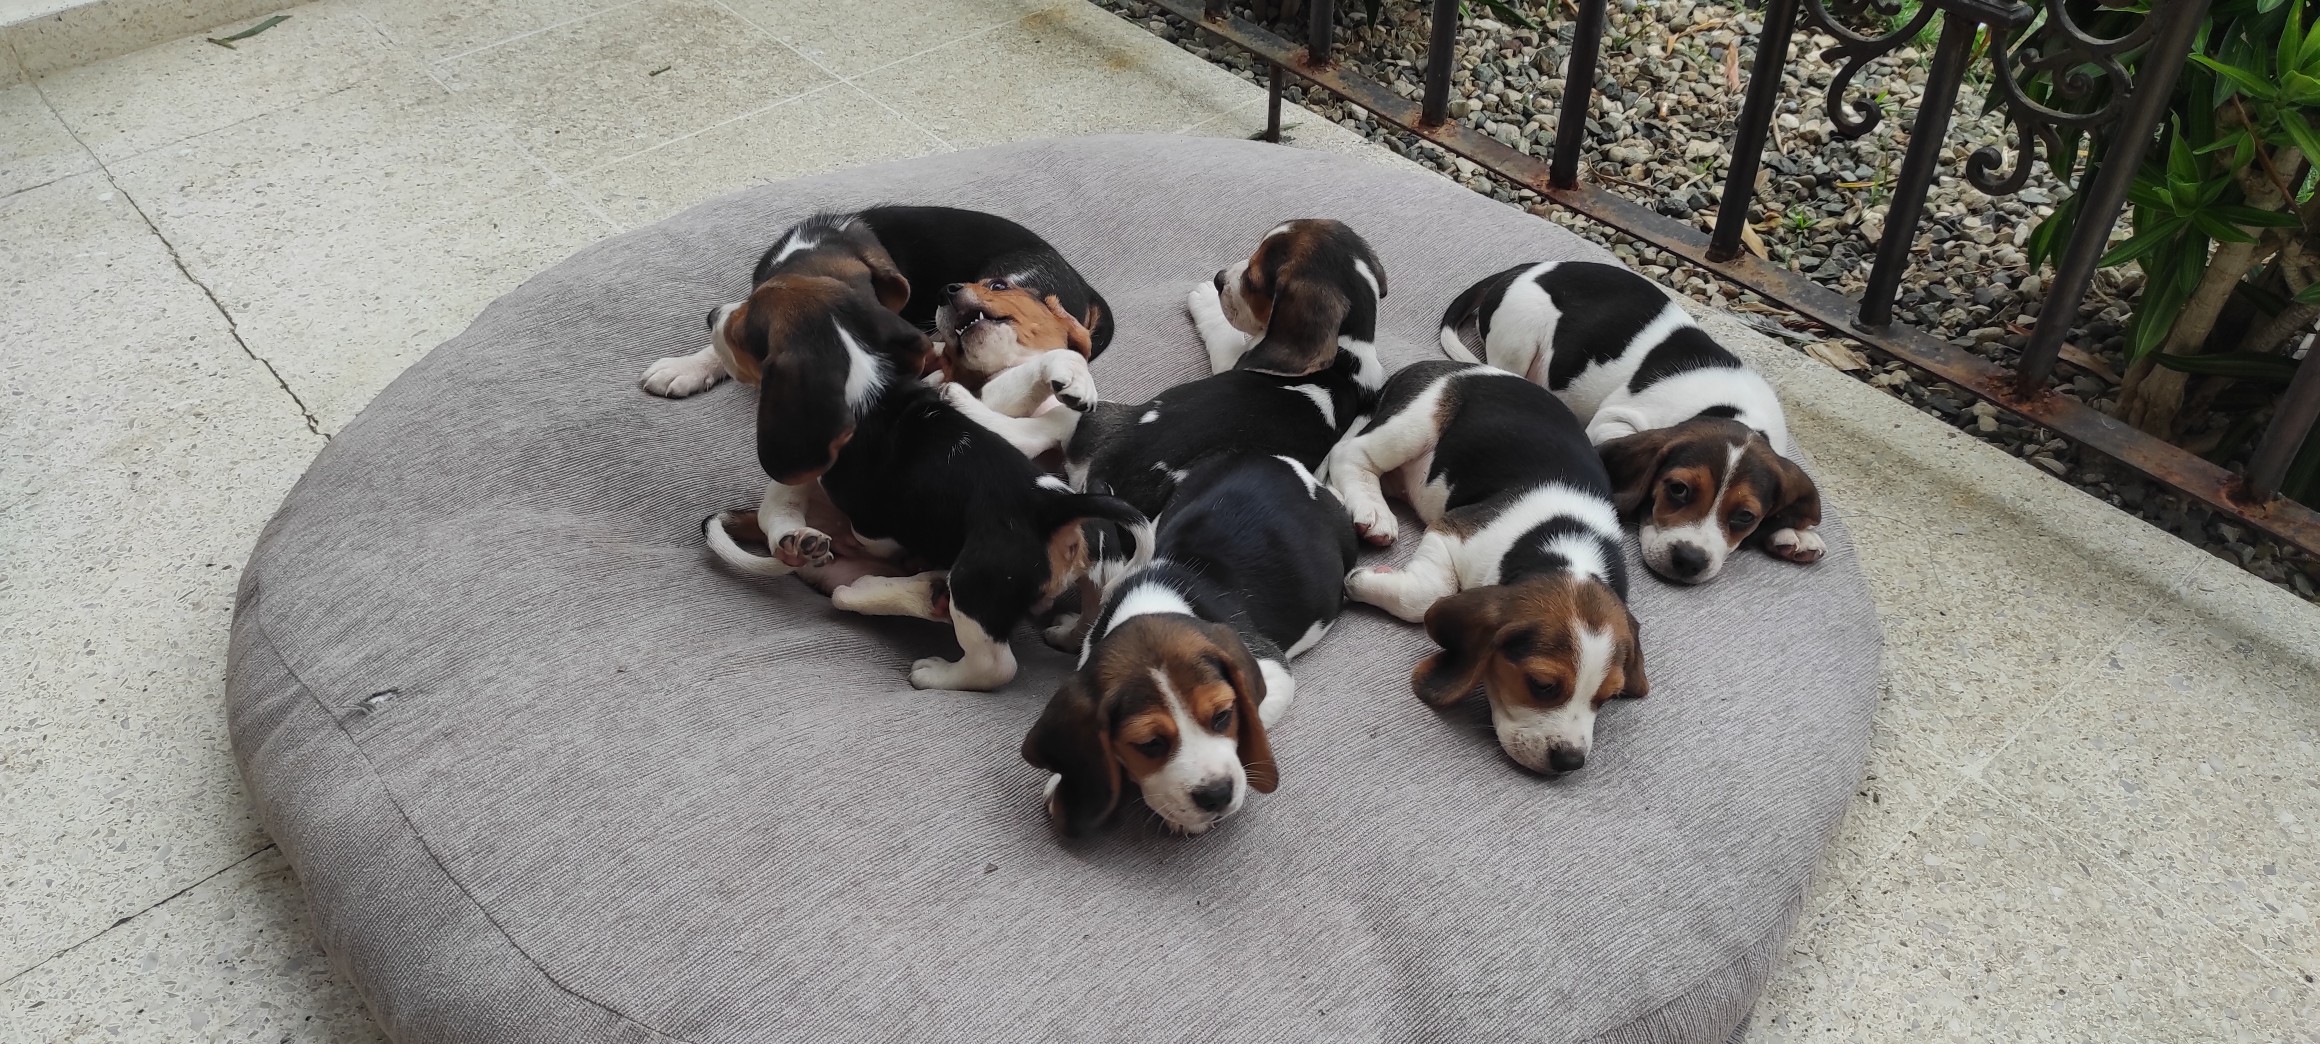 animales y mascotas - Cachorros Beagles Puros